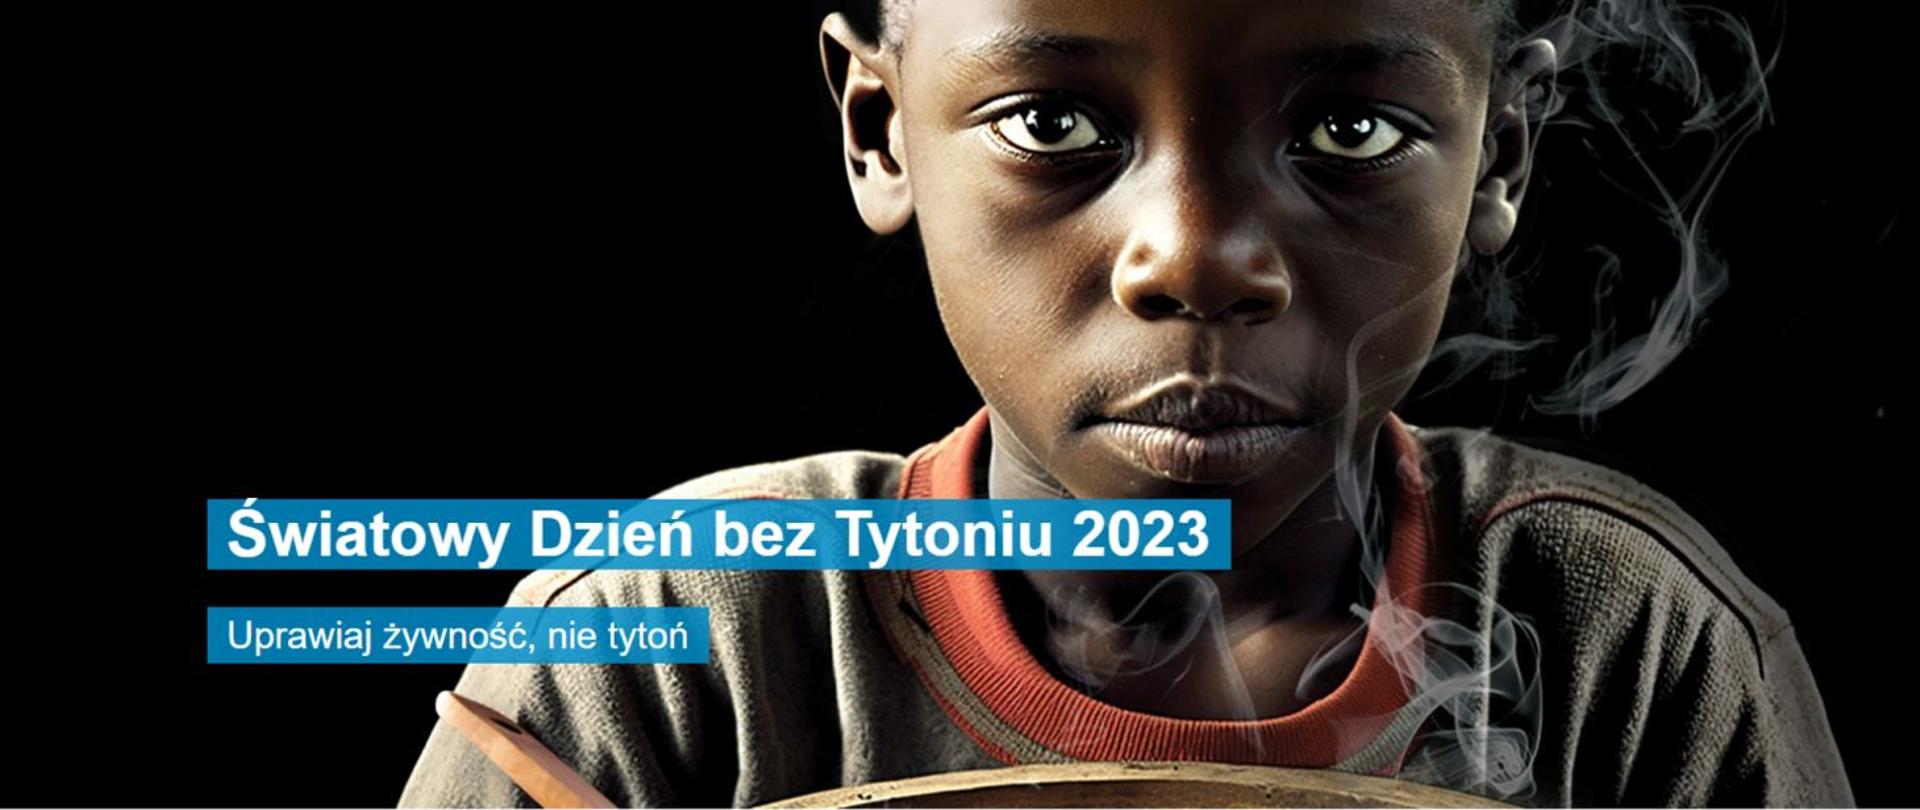 na czarnym tle afroamerykańskie dziecko z misą pełną papierosów , w tle napis – hasło kampanii „Uprawiaj żywność, nie tytoń” oraz ŚWIATOWY DZIEŃ BEZ TYTONIU 2023